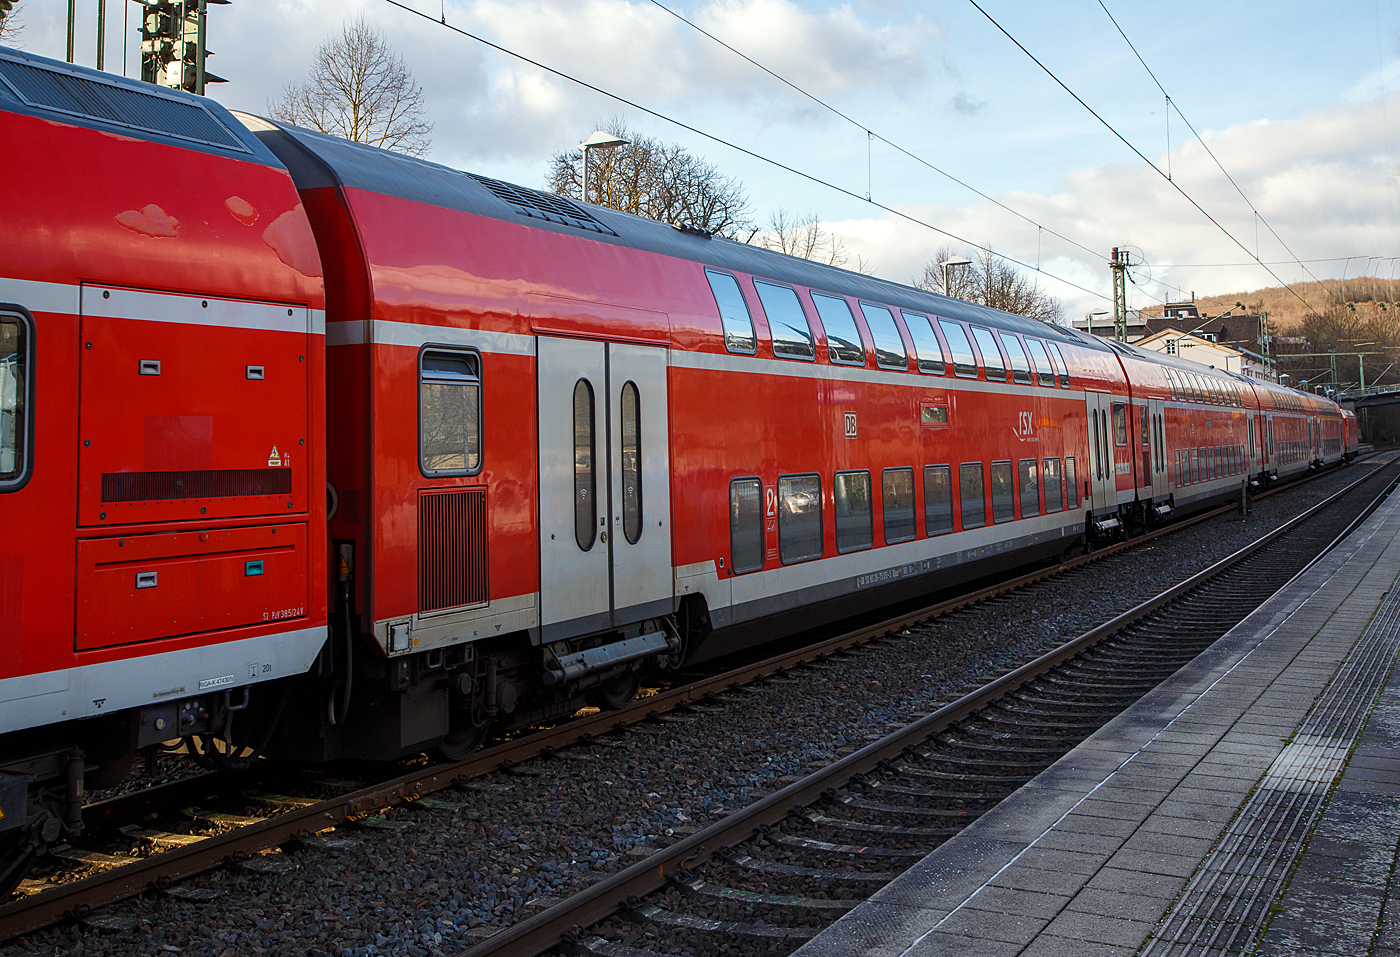 2. Klasse klimatisierter Doppelstock-Reisezugwagen (Hocheinstiegs-Dosto) D-DB 50 80 26-75 051-5 der Gattung DBpza 753.5, vom rsx - Rhein-Sieg-Express der DB Regio NRW, am 17.01.2023 im Zugverband vom RE 9 im Bahnhof Kirchen (Sieg). 

Der Wagen wurde 1999 von der Deutsche Waggonbau AG (DWA) in Görlitz gebaut.

TECHNISCHE DATEN: 
Gattung/Bauart: DBpza 753.5,
Spurweite: 1.435 mm
Anzahl der Achsen: 4
Länge über Puffer: 26.800 mm
Wagenkastenlänge: 26 400 mm
Wagenkastenbreite: 2.784 mm
Höhe über Schienenoberkante: 4.631 mm
Drehzapfenabstand: 20.000 mm
Achsstand im Drehgestell: 2 500 mm
Drehgestellbauart:  Görlitz VIII
Leergewicht:  49 t
Höchstgeschwindigkeit: 160 km/h 
Sitzplätze: 139in der 2. Klasse
Toiletten: 1, geschlossenes System
Einstieg: Hoch
Bremse: KE-R-A-Mg (D)
Bemerkung : 1 Mehrzweckabteil; eingeschränkt dieselloktauglich